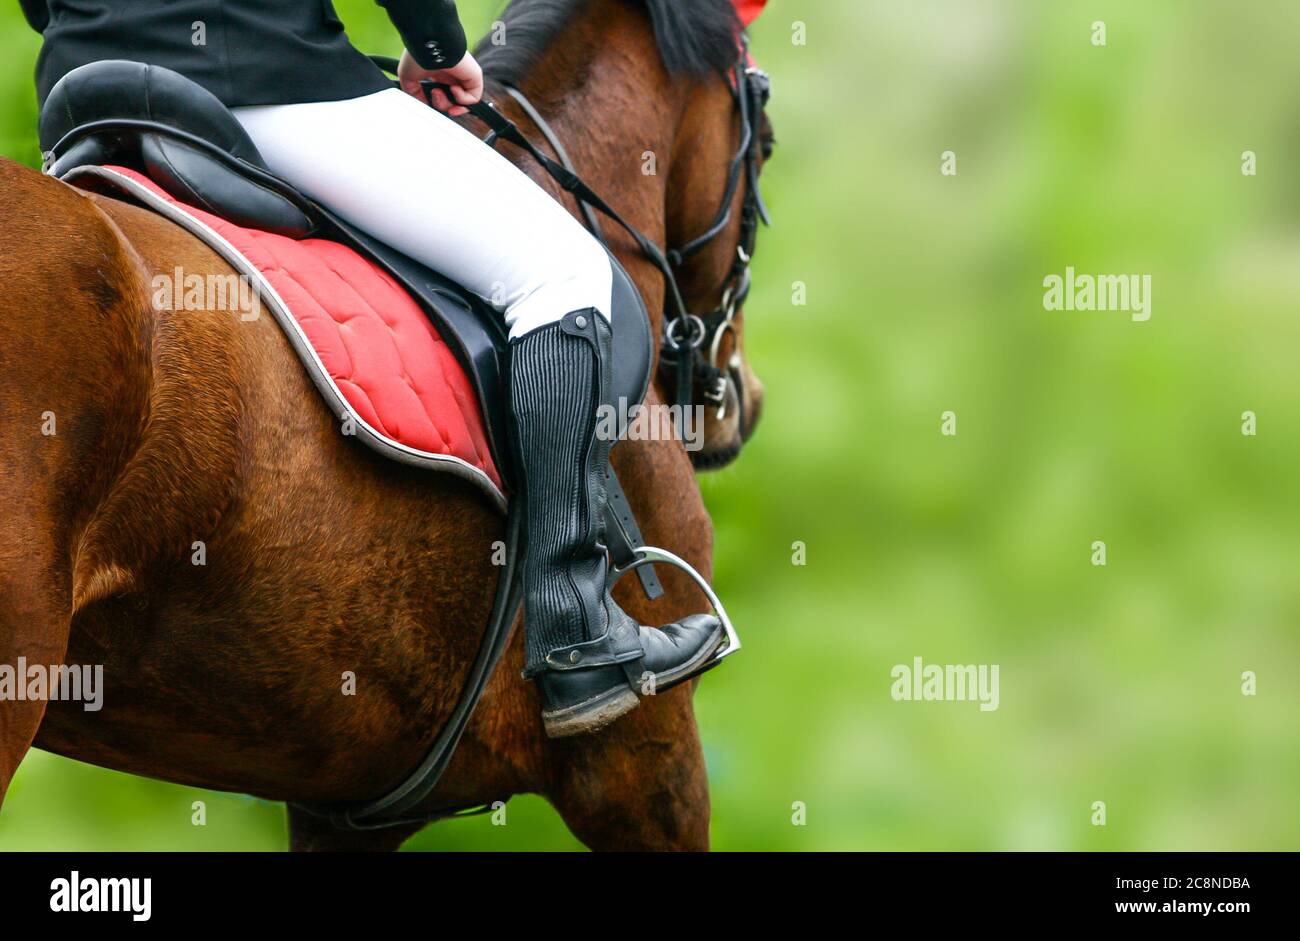 Horse riding closeup in summer season Stock Photo